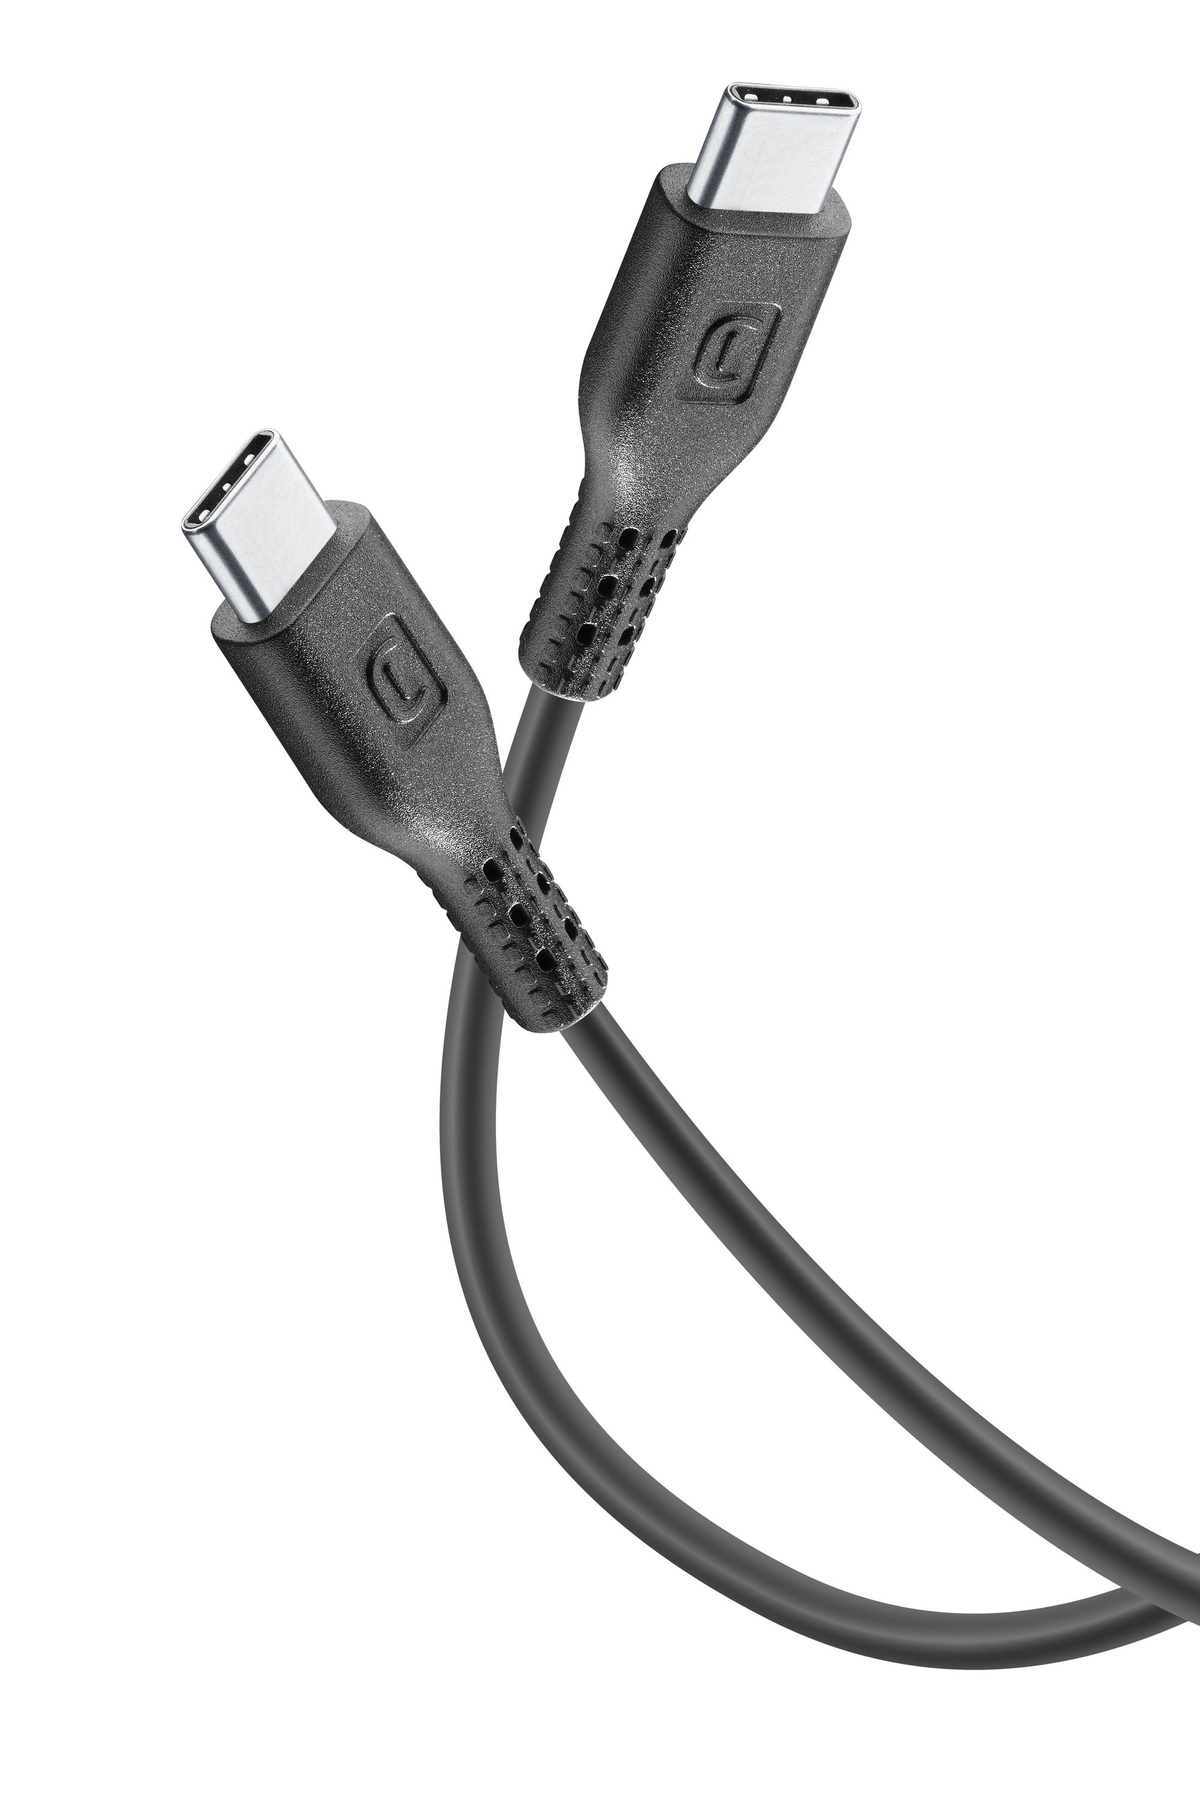 CELLULAR LINE USBDATAC2C5A1MK, Weiß Ladekabel, 120 cm